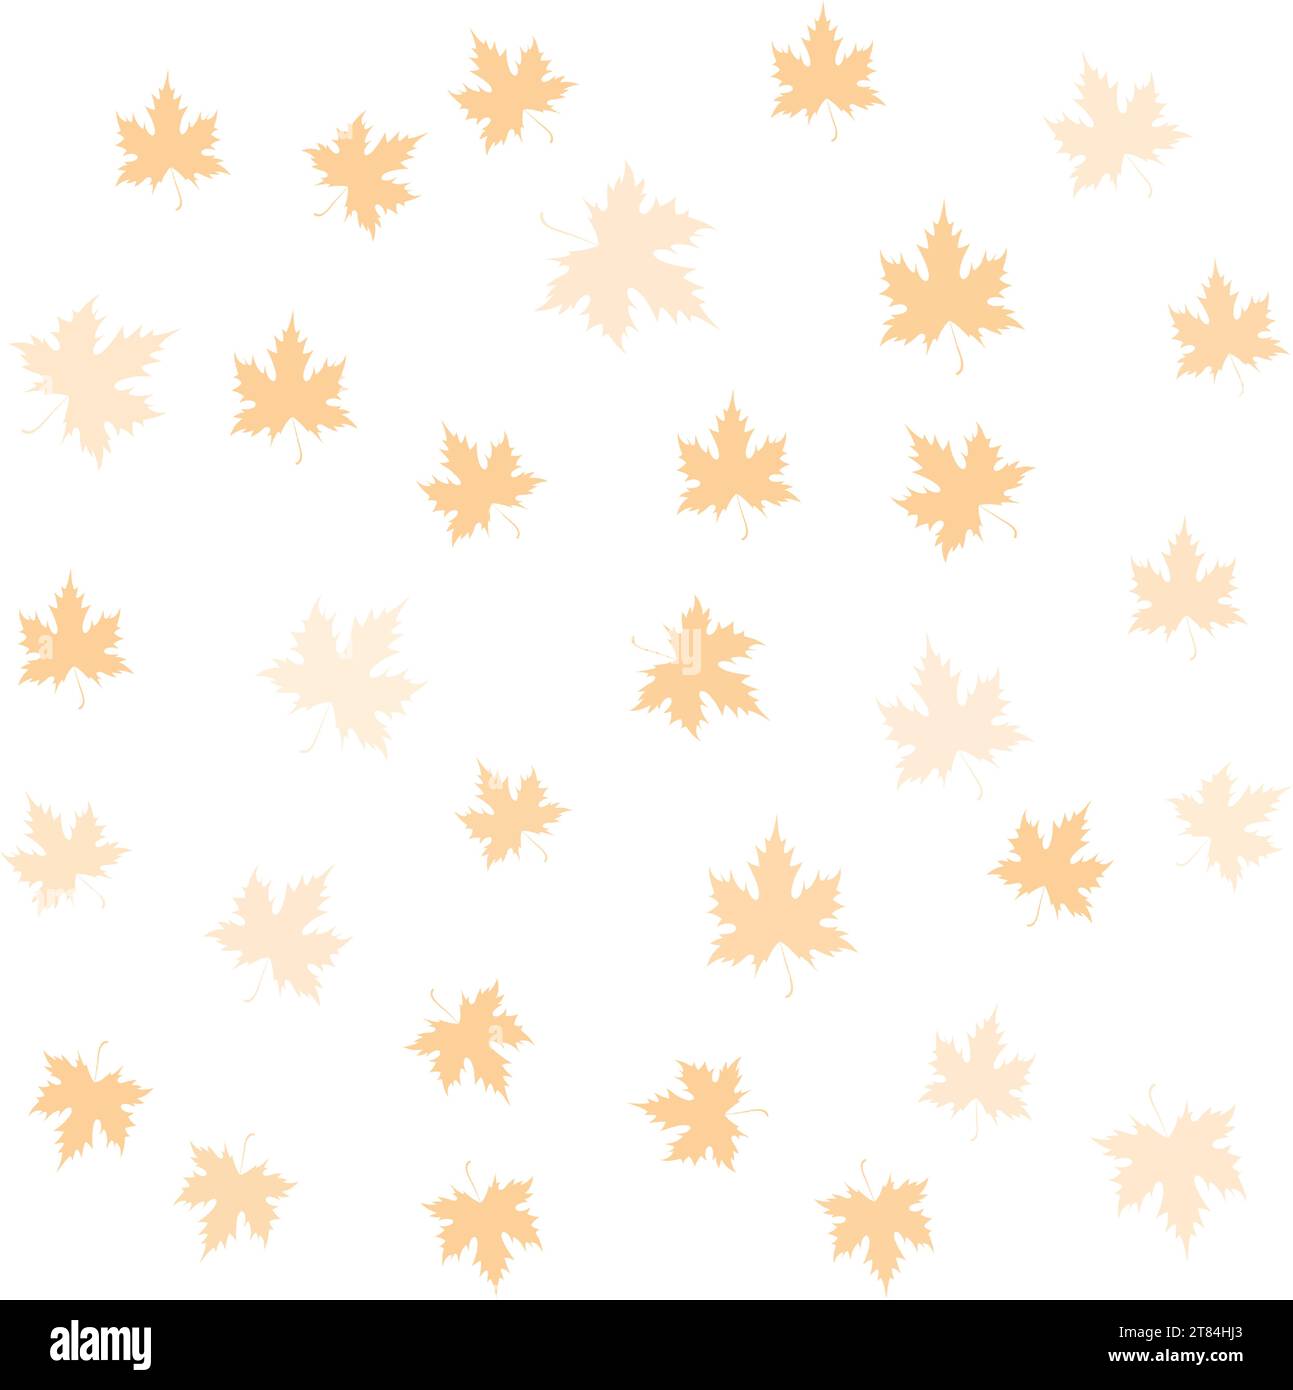 Sfondo con foglie d'acero trasparenti. Texture con silhouette di foglie autunnali. Per il design e la decorazione delle vacanze autunnali, cartolina, poster, inviti Illustrazione Vettoriale